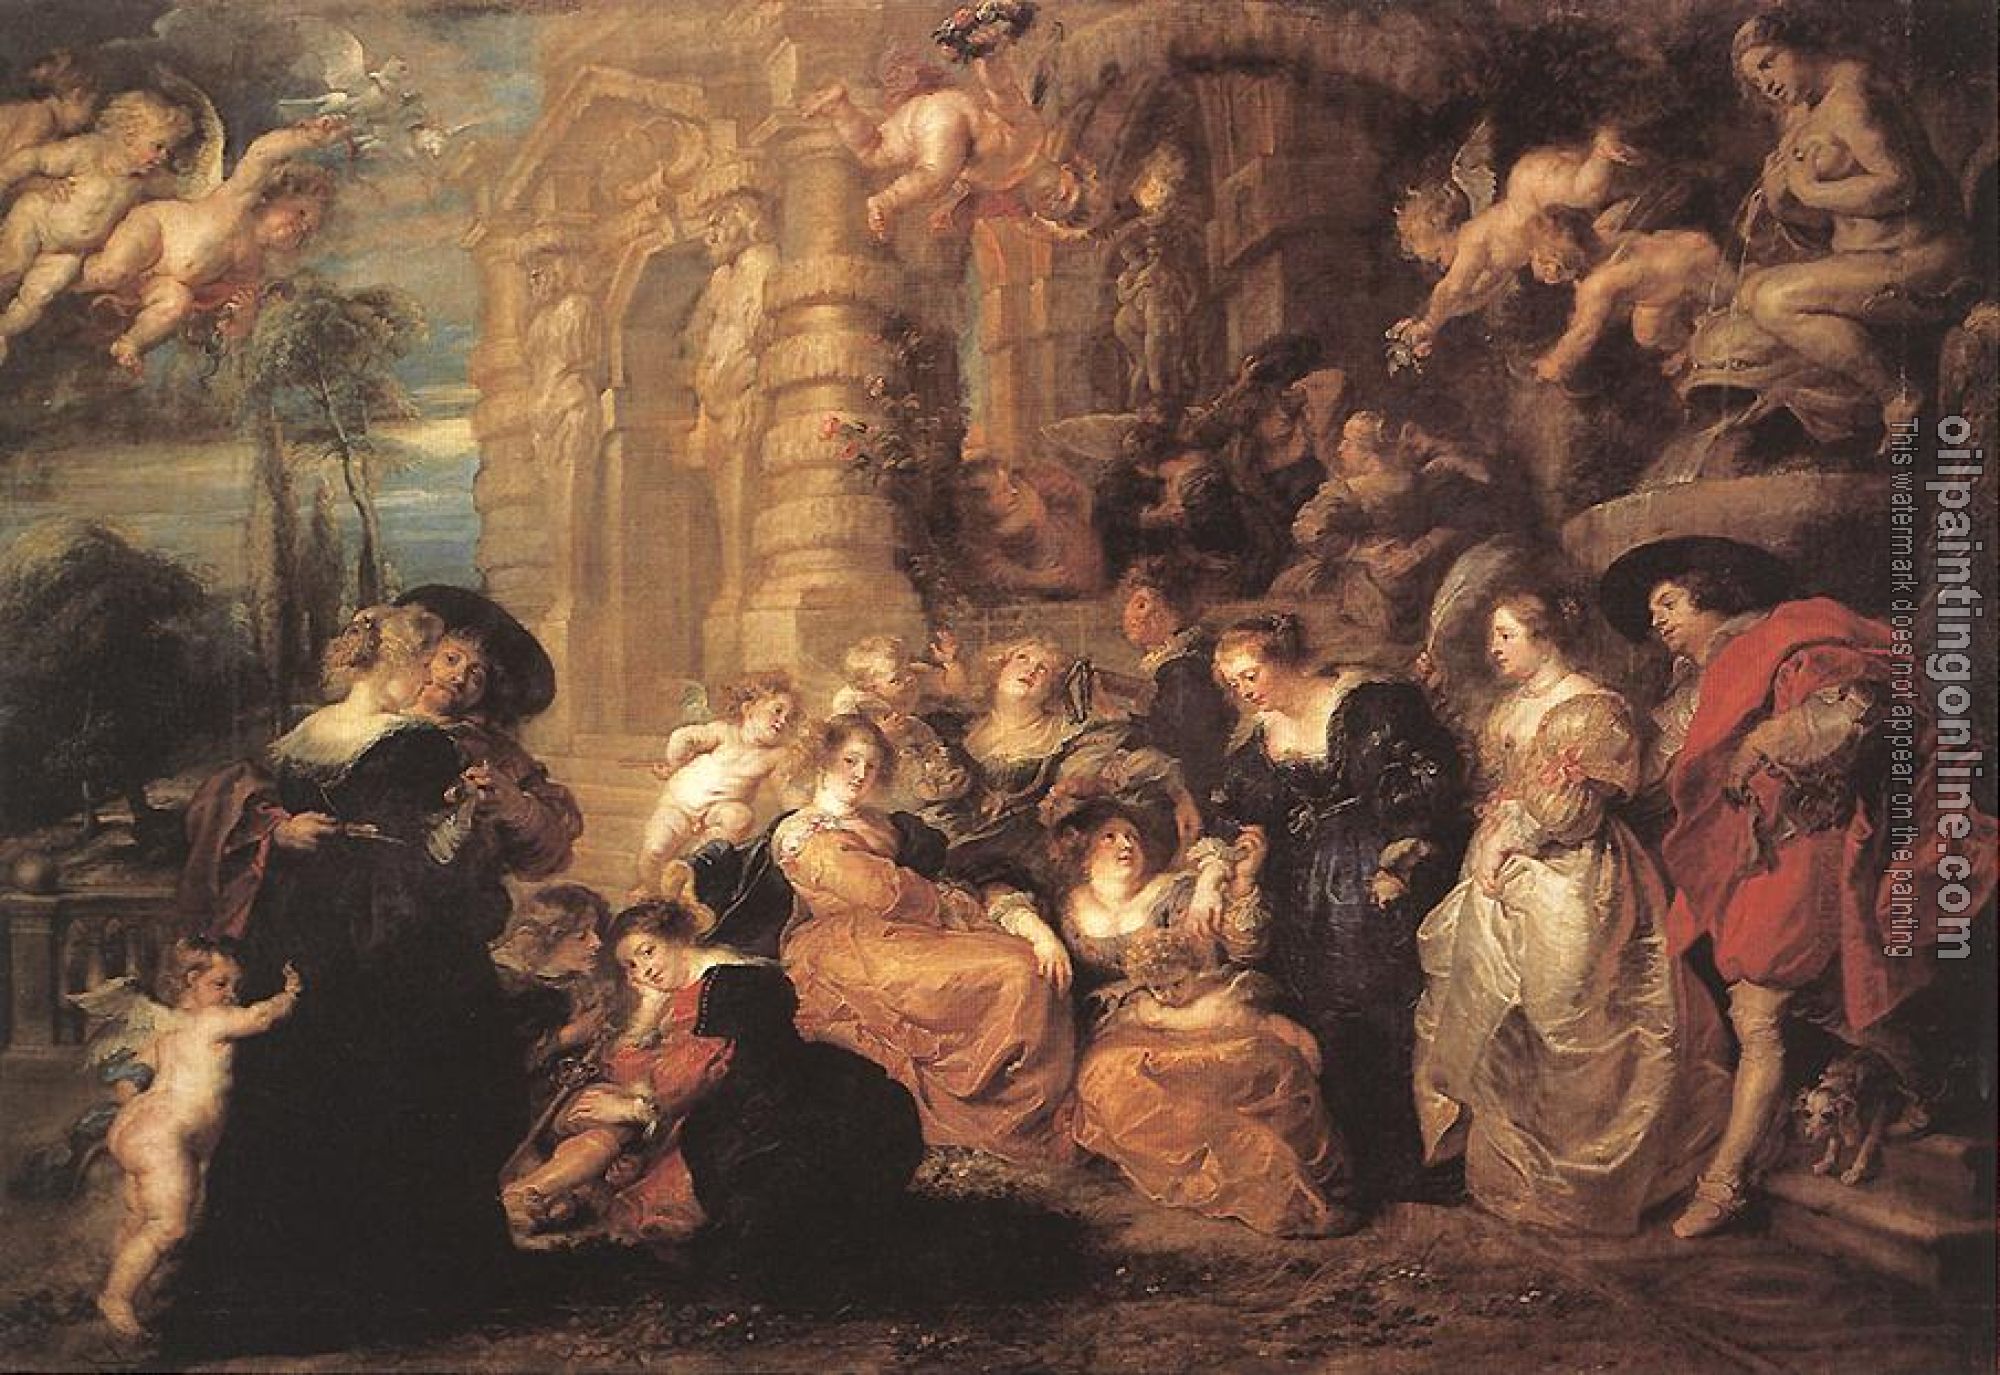 Rubens, Peter Paul - Garden of Love